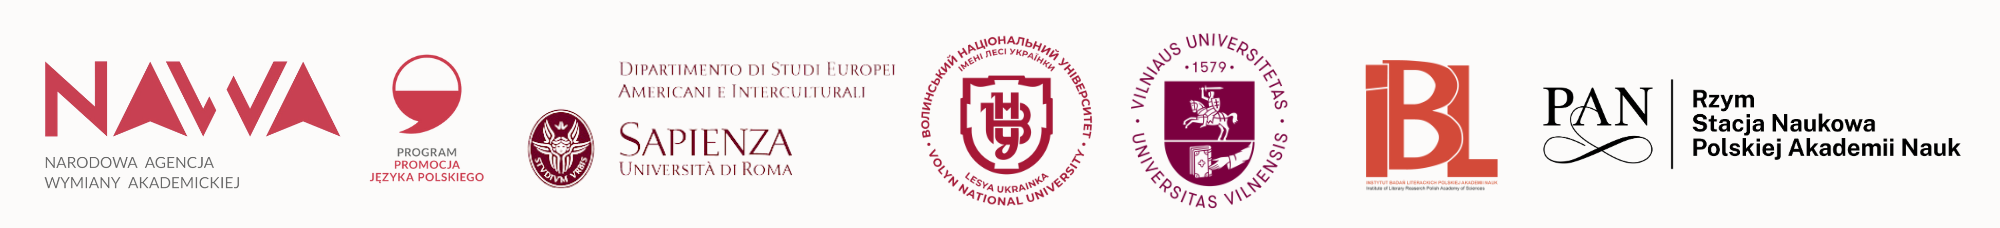 Logotypy instytucji biorących udział w projekcie "Kobieca strona poezji"